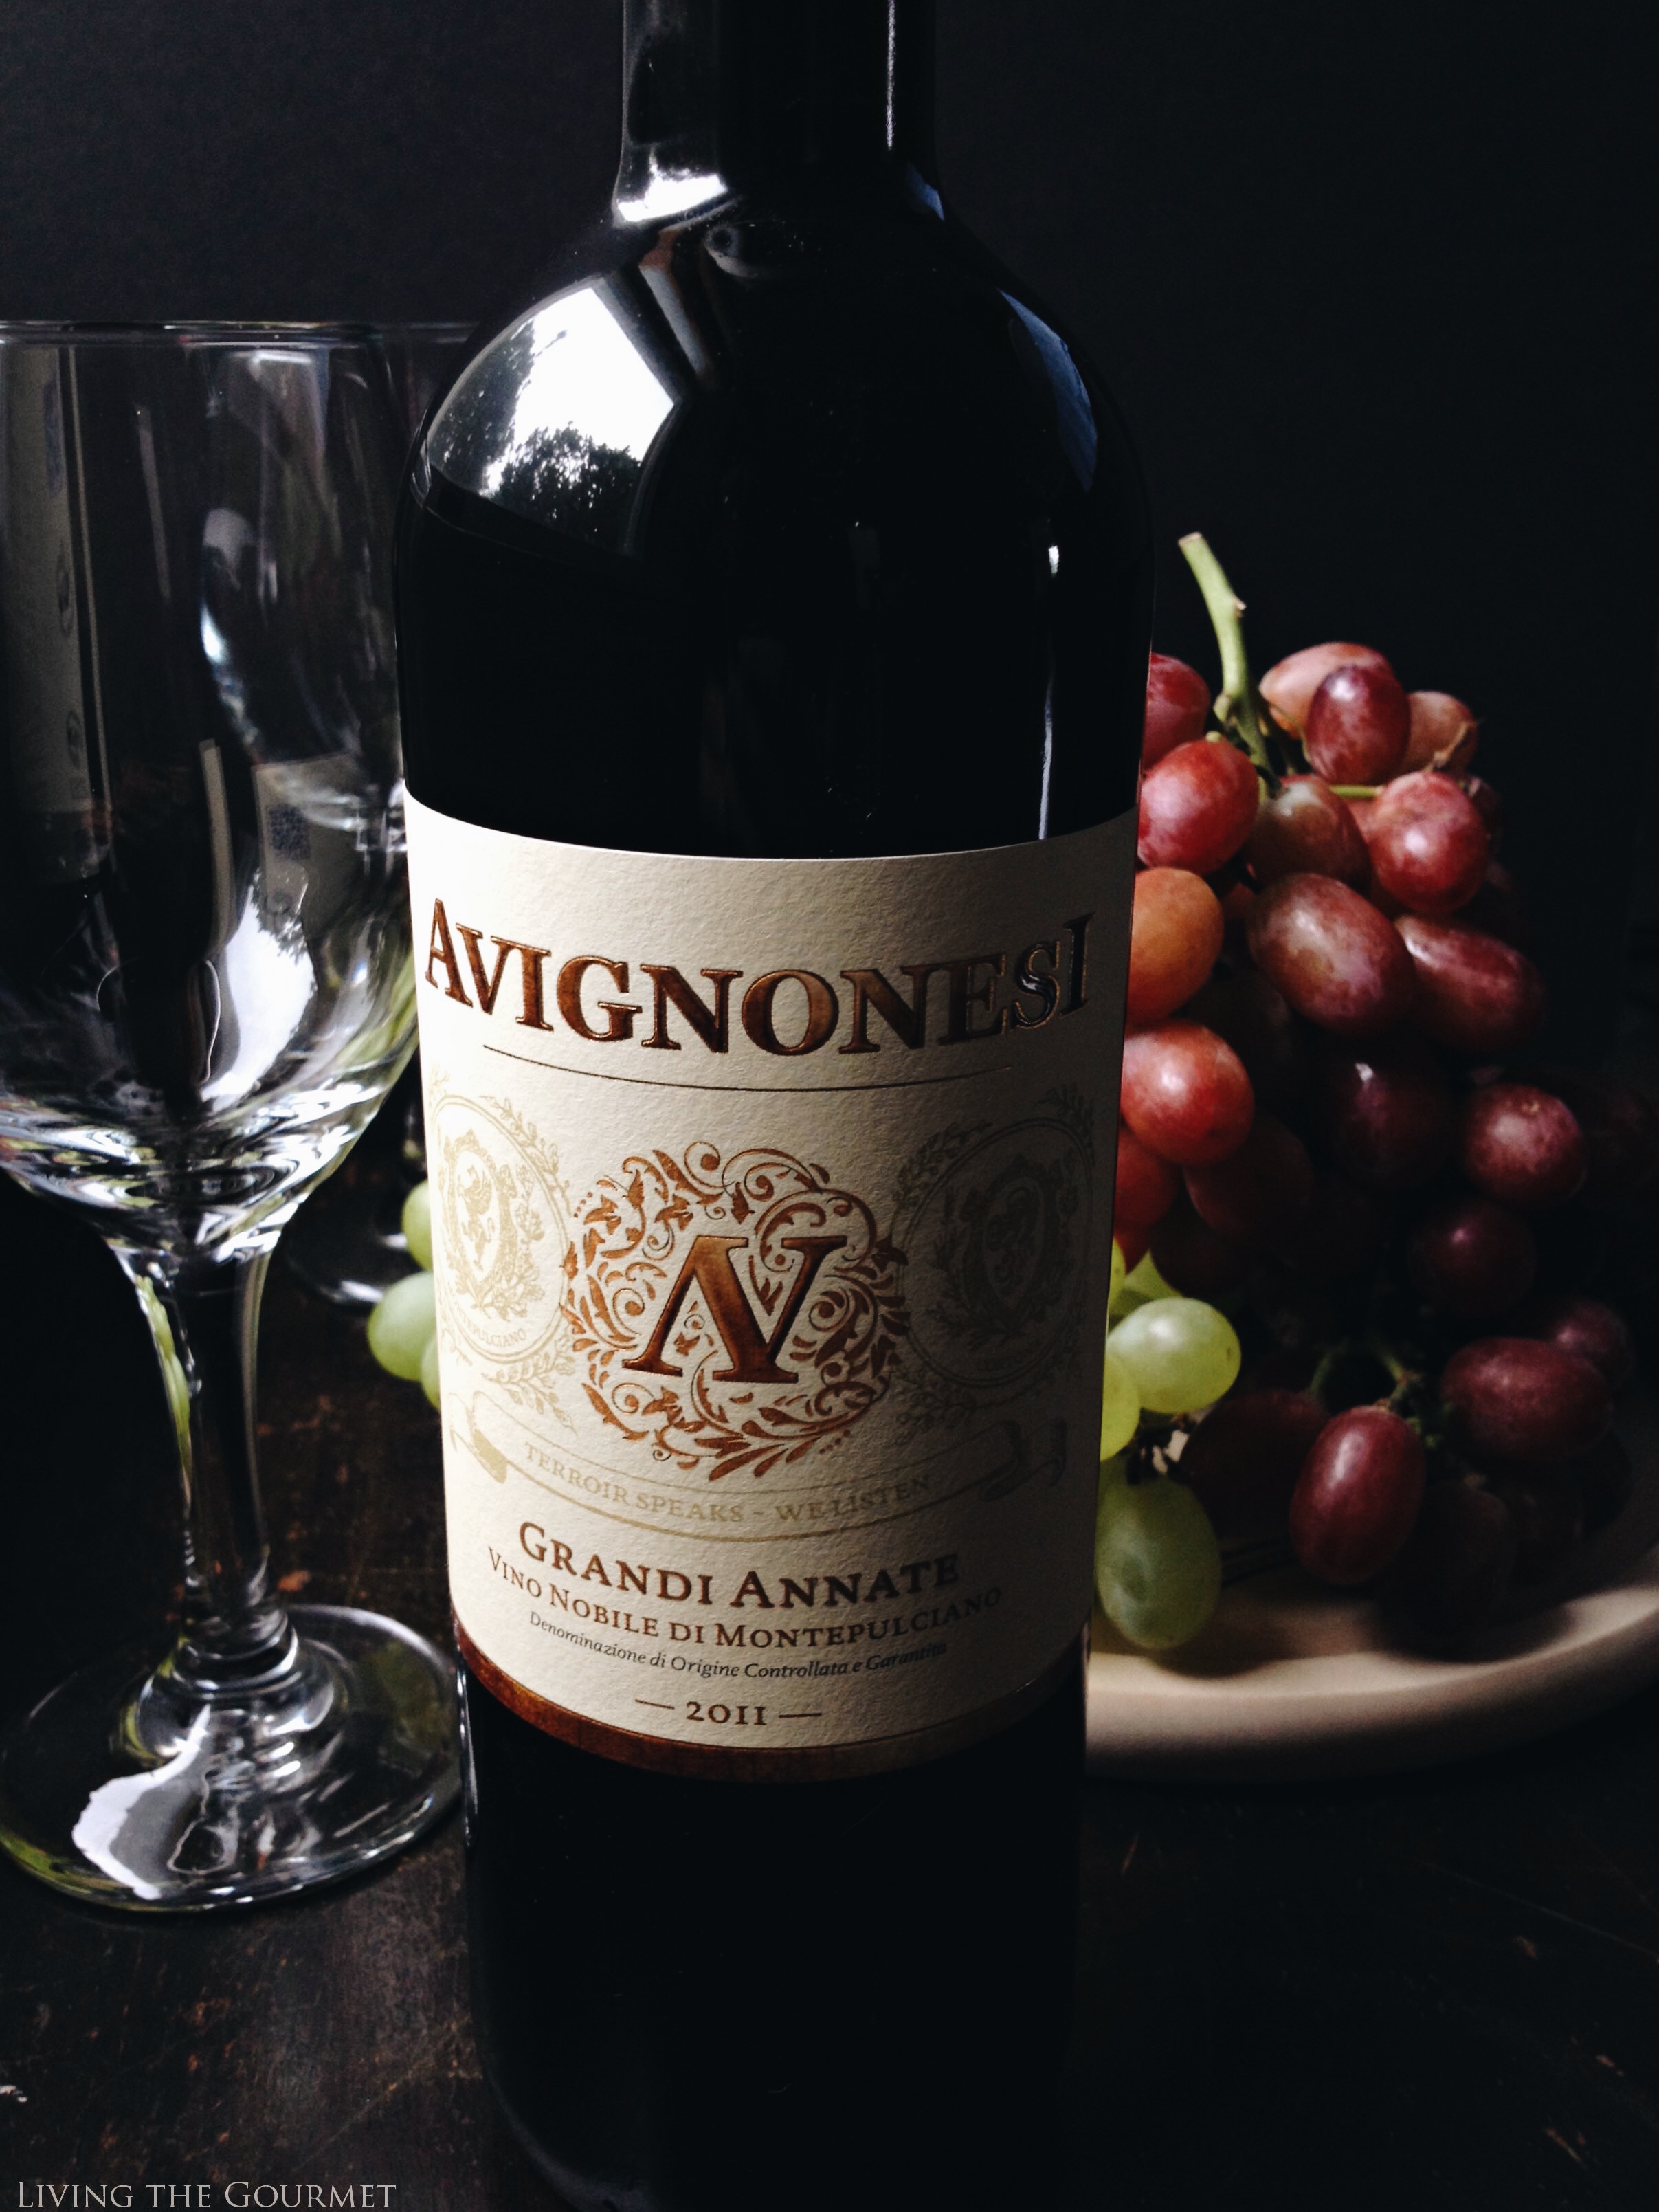 Living the Gourmet: Avignonesi Wine